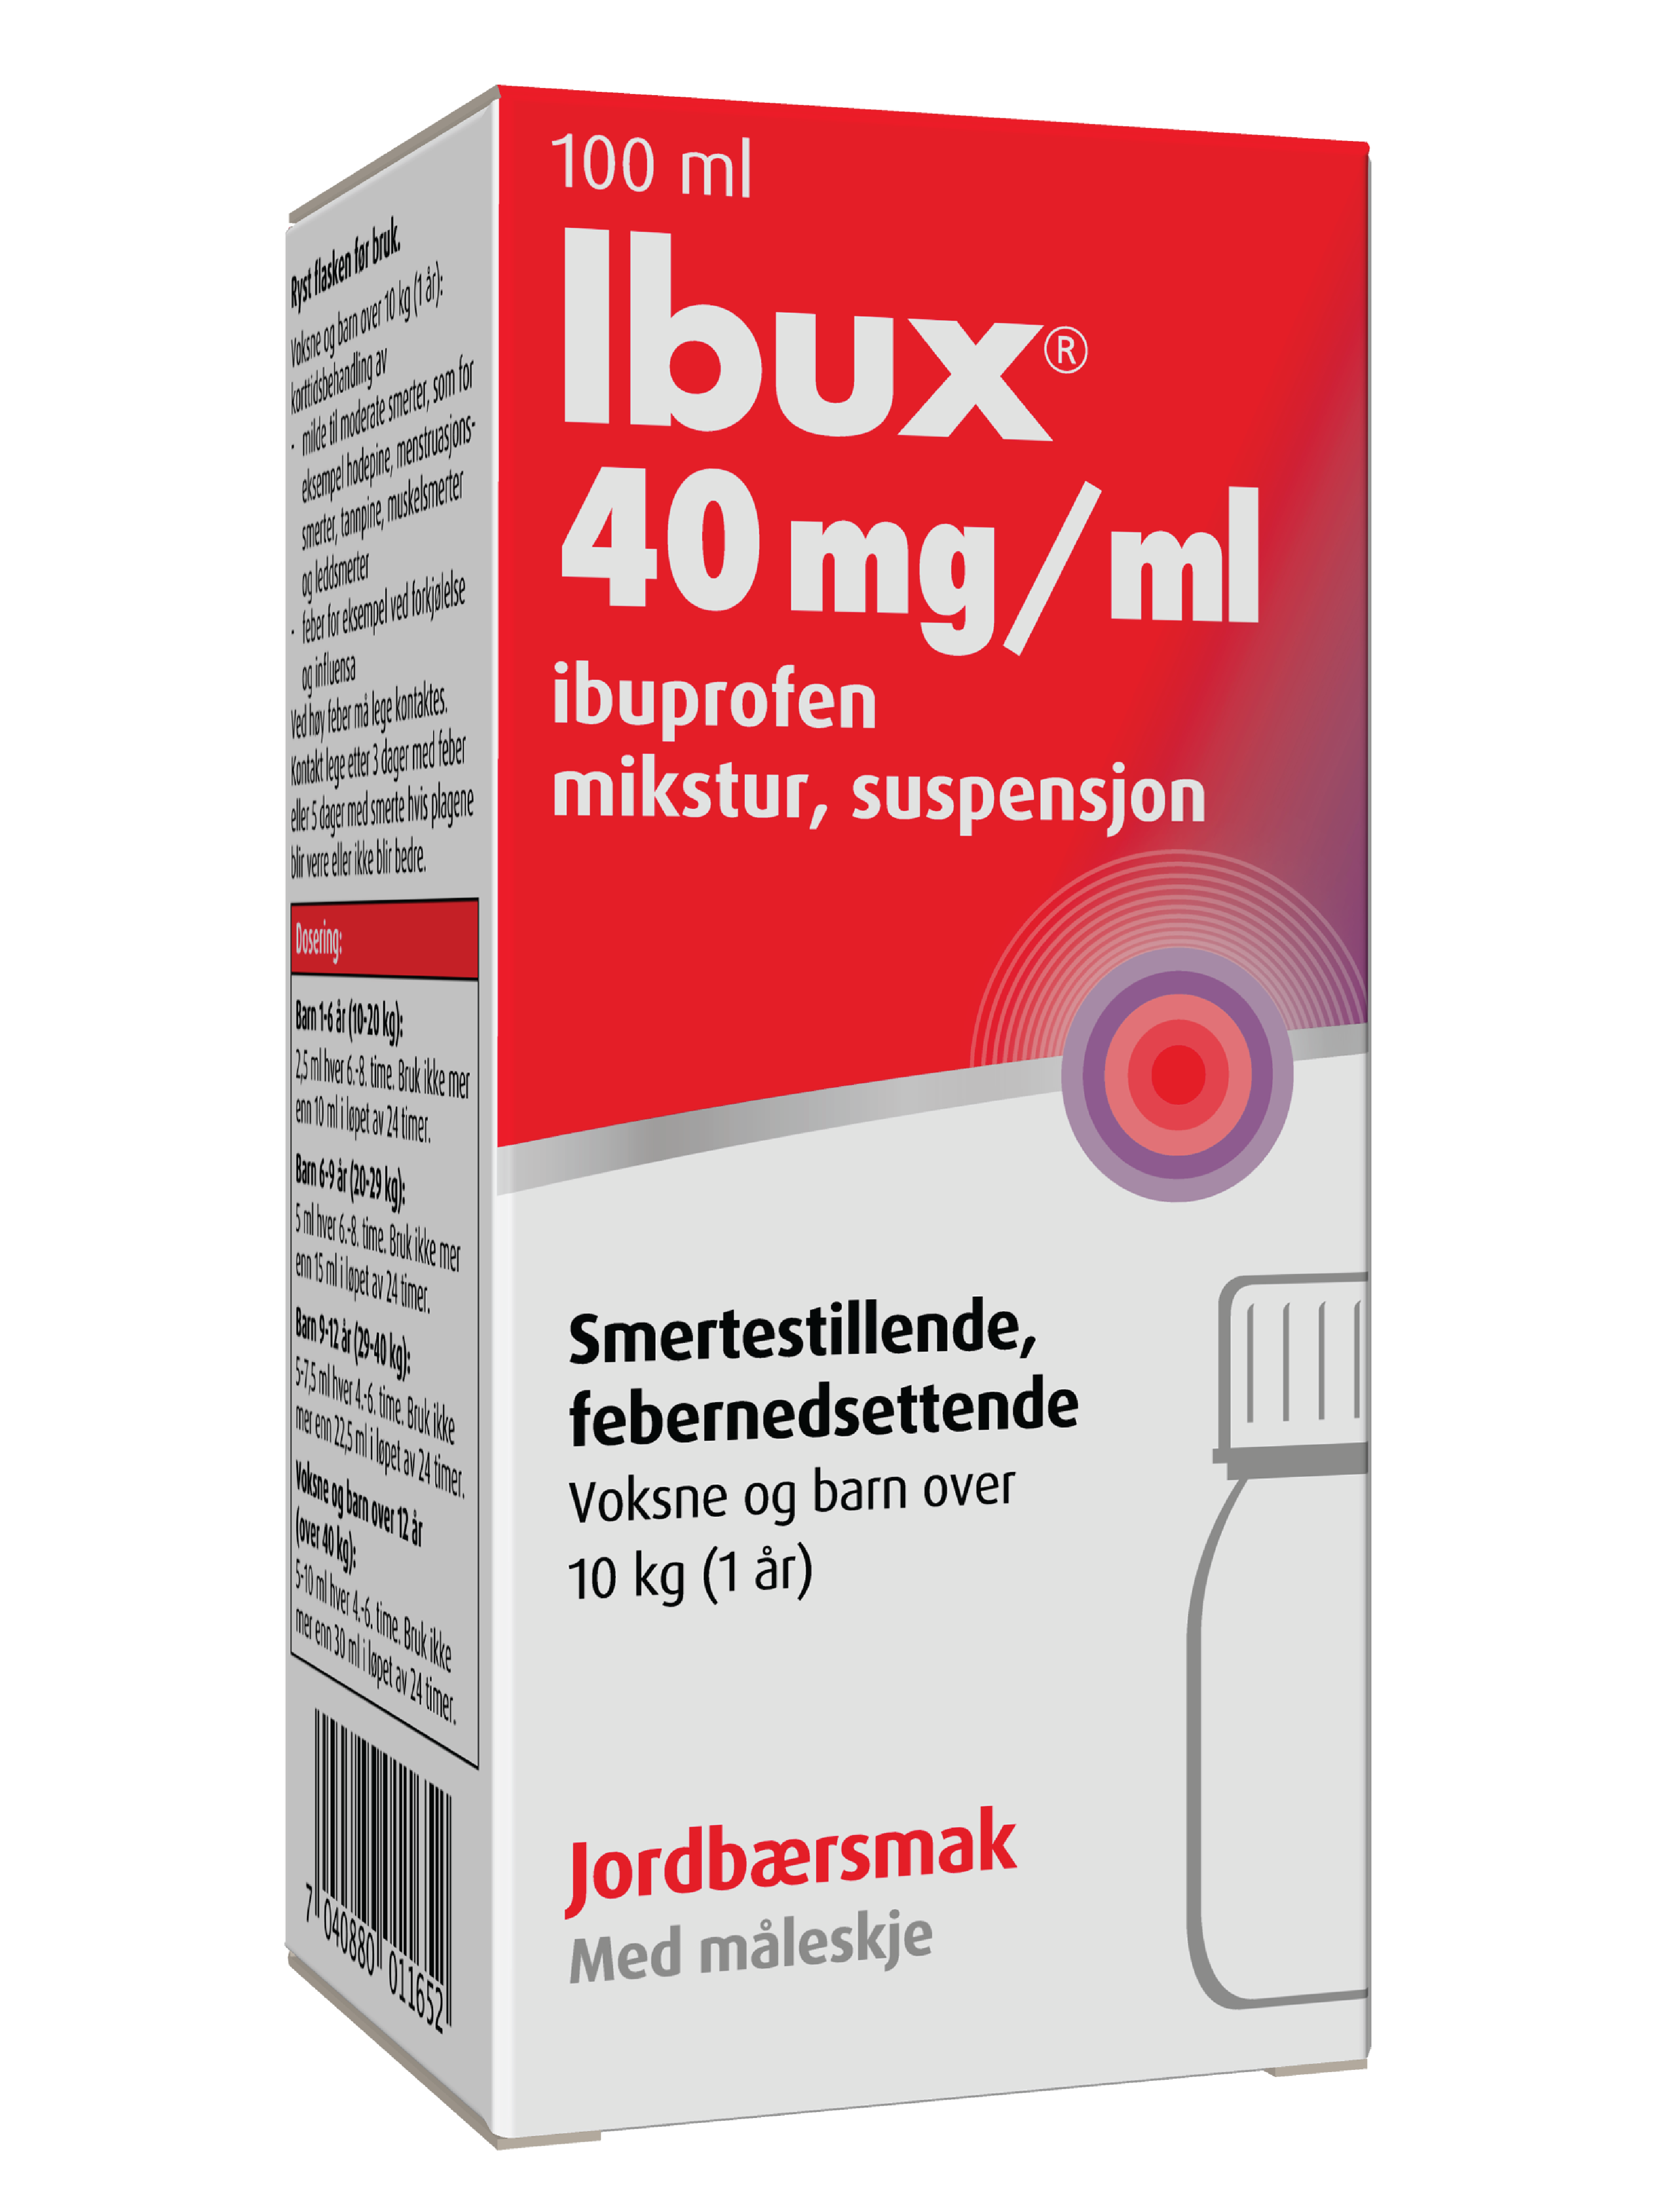 Ibux Mikstur 40mg/ml jordbær, 100 ml.